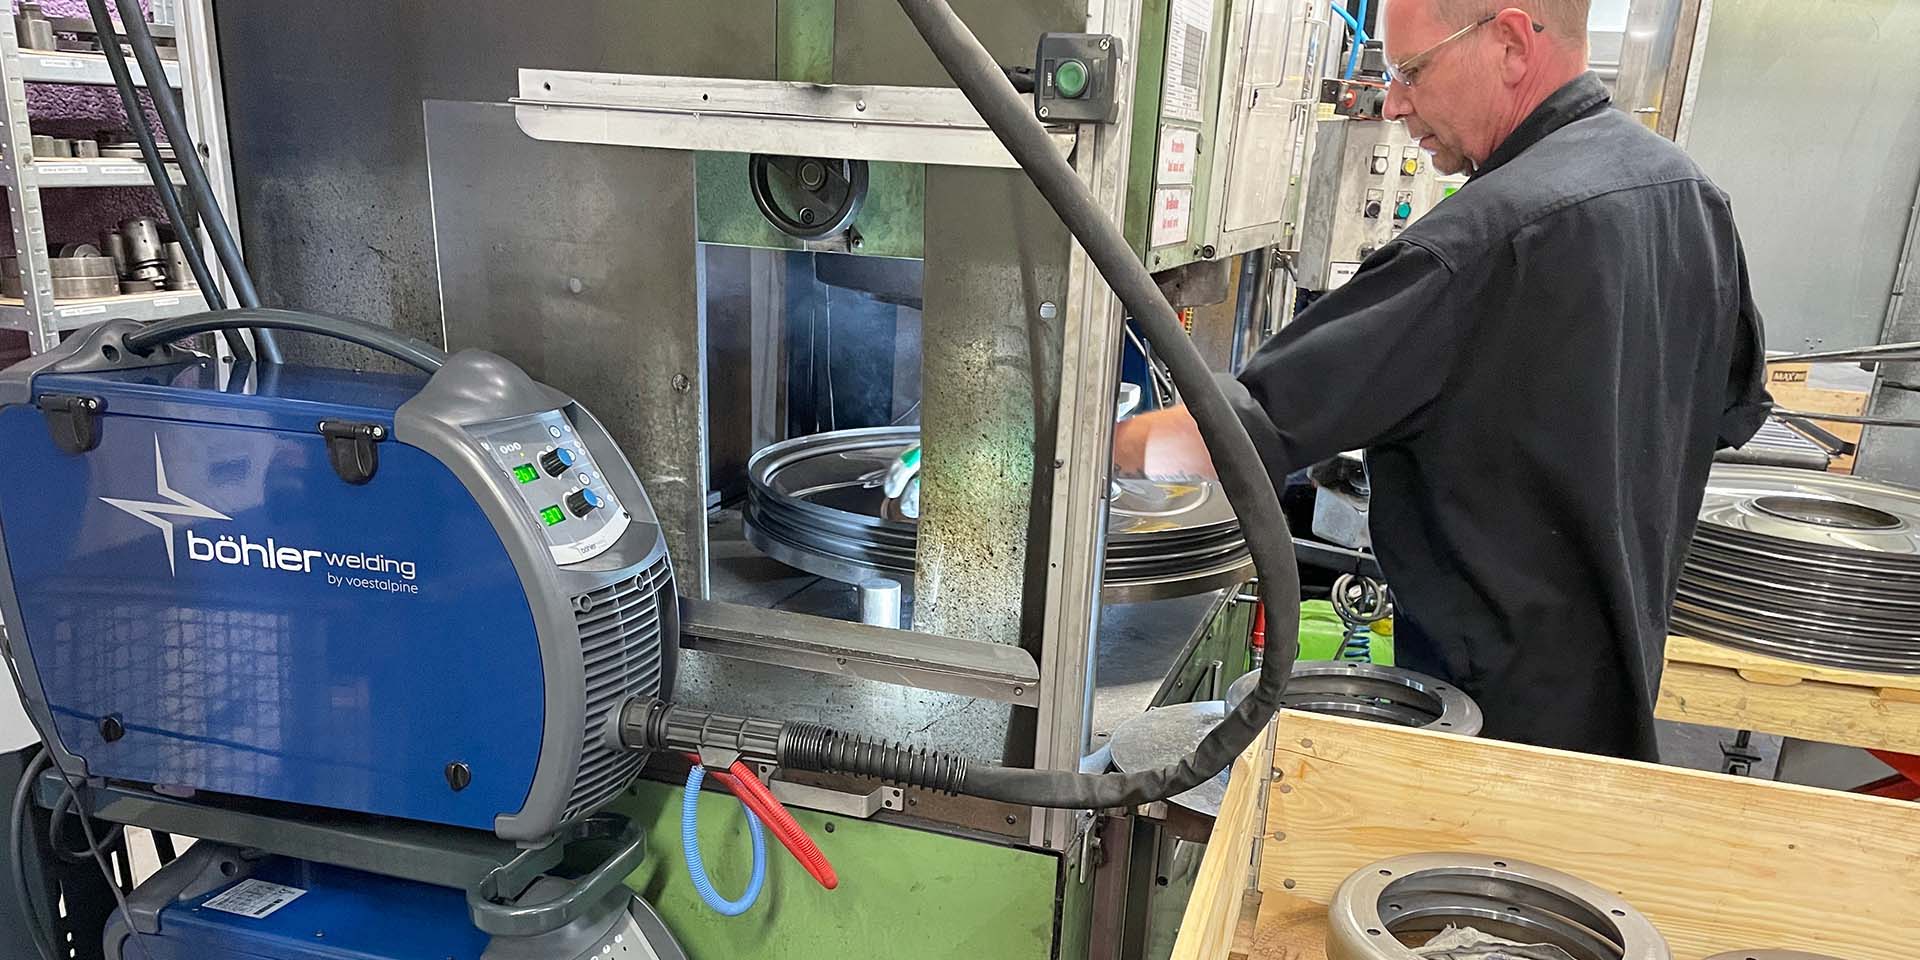 Steel Products' nye maskiner: Hurtigere svejsning og mindre bøvl